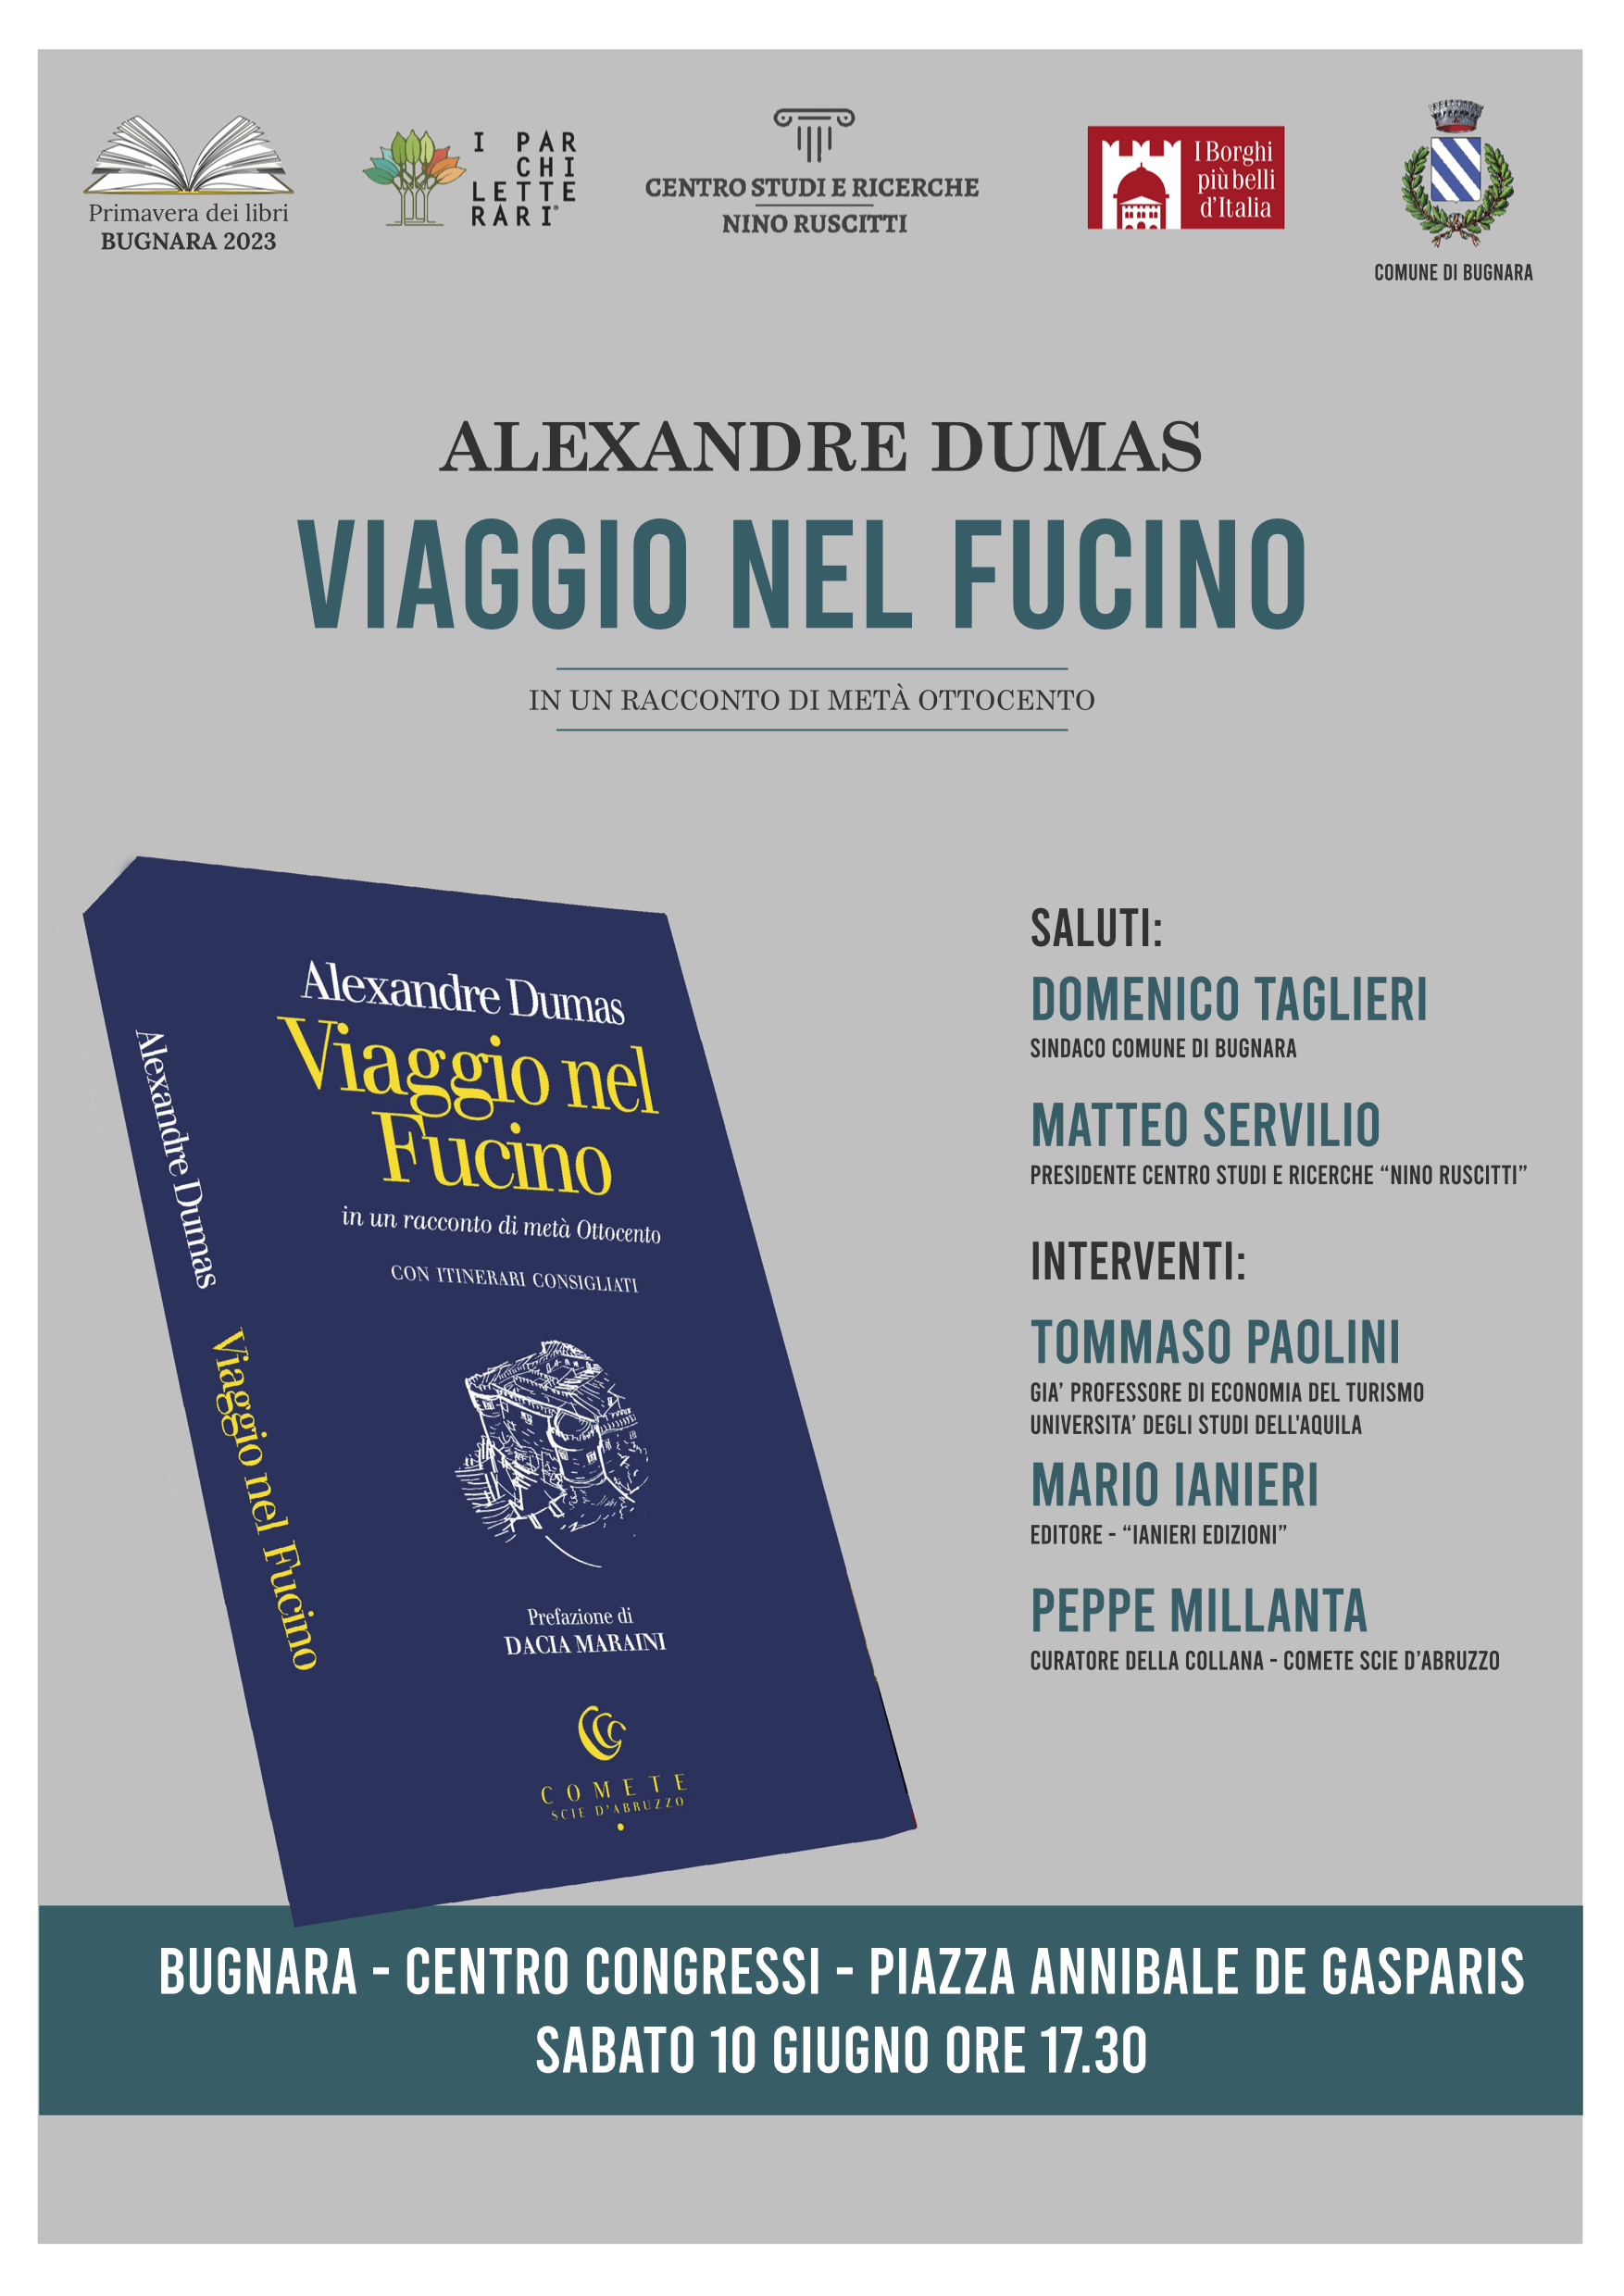 Libri&Editoria. Bugnara: il libro di Alexandre Dumas chiude la Rassegna “Primavera dei Libri”